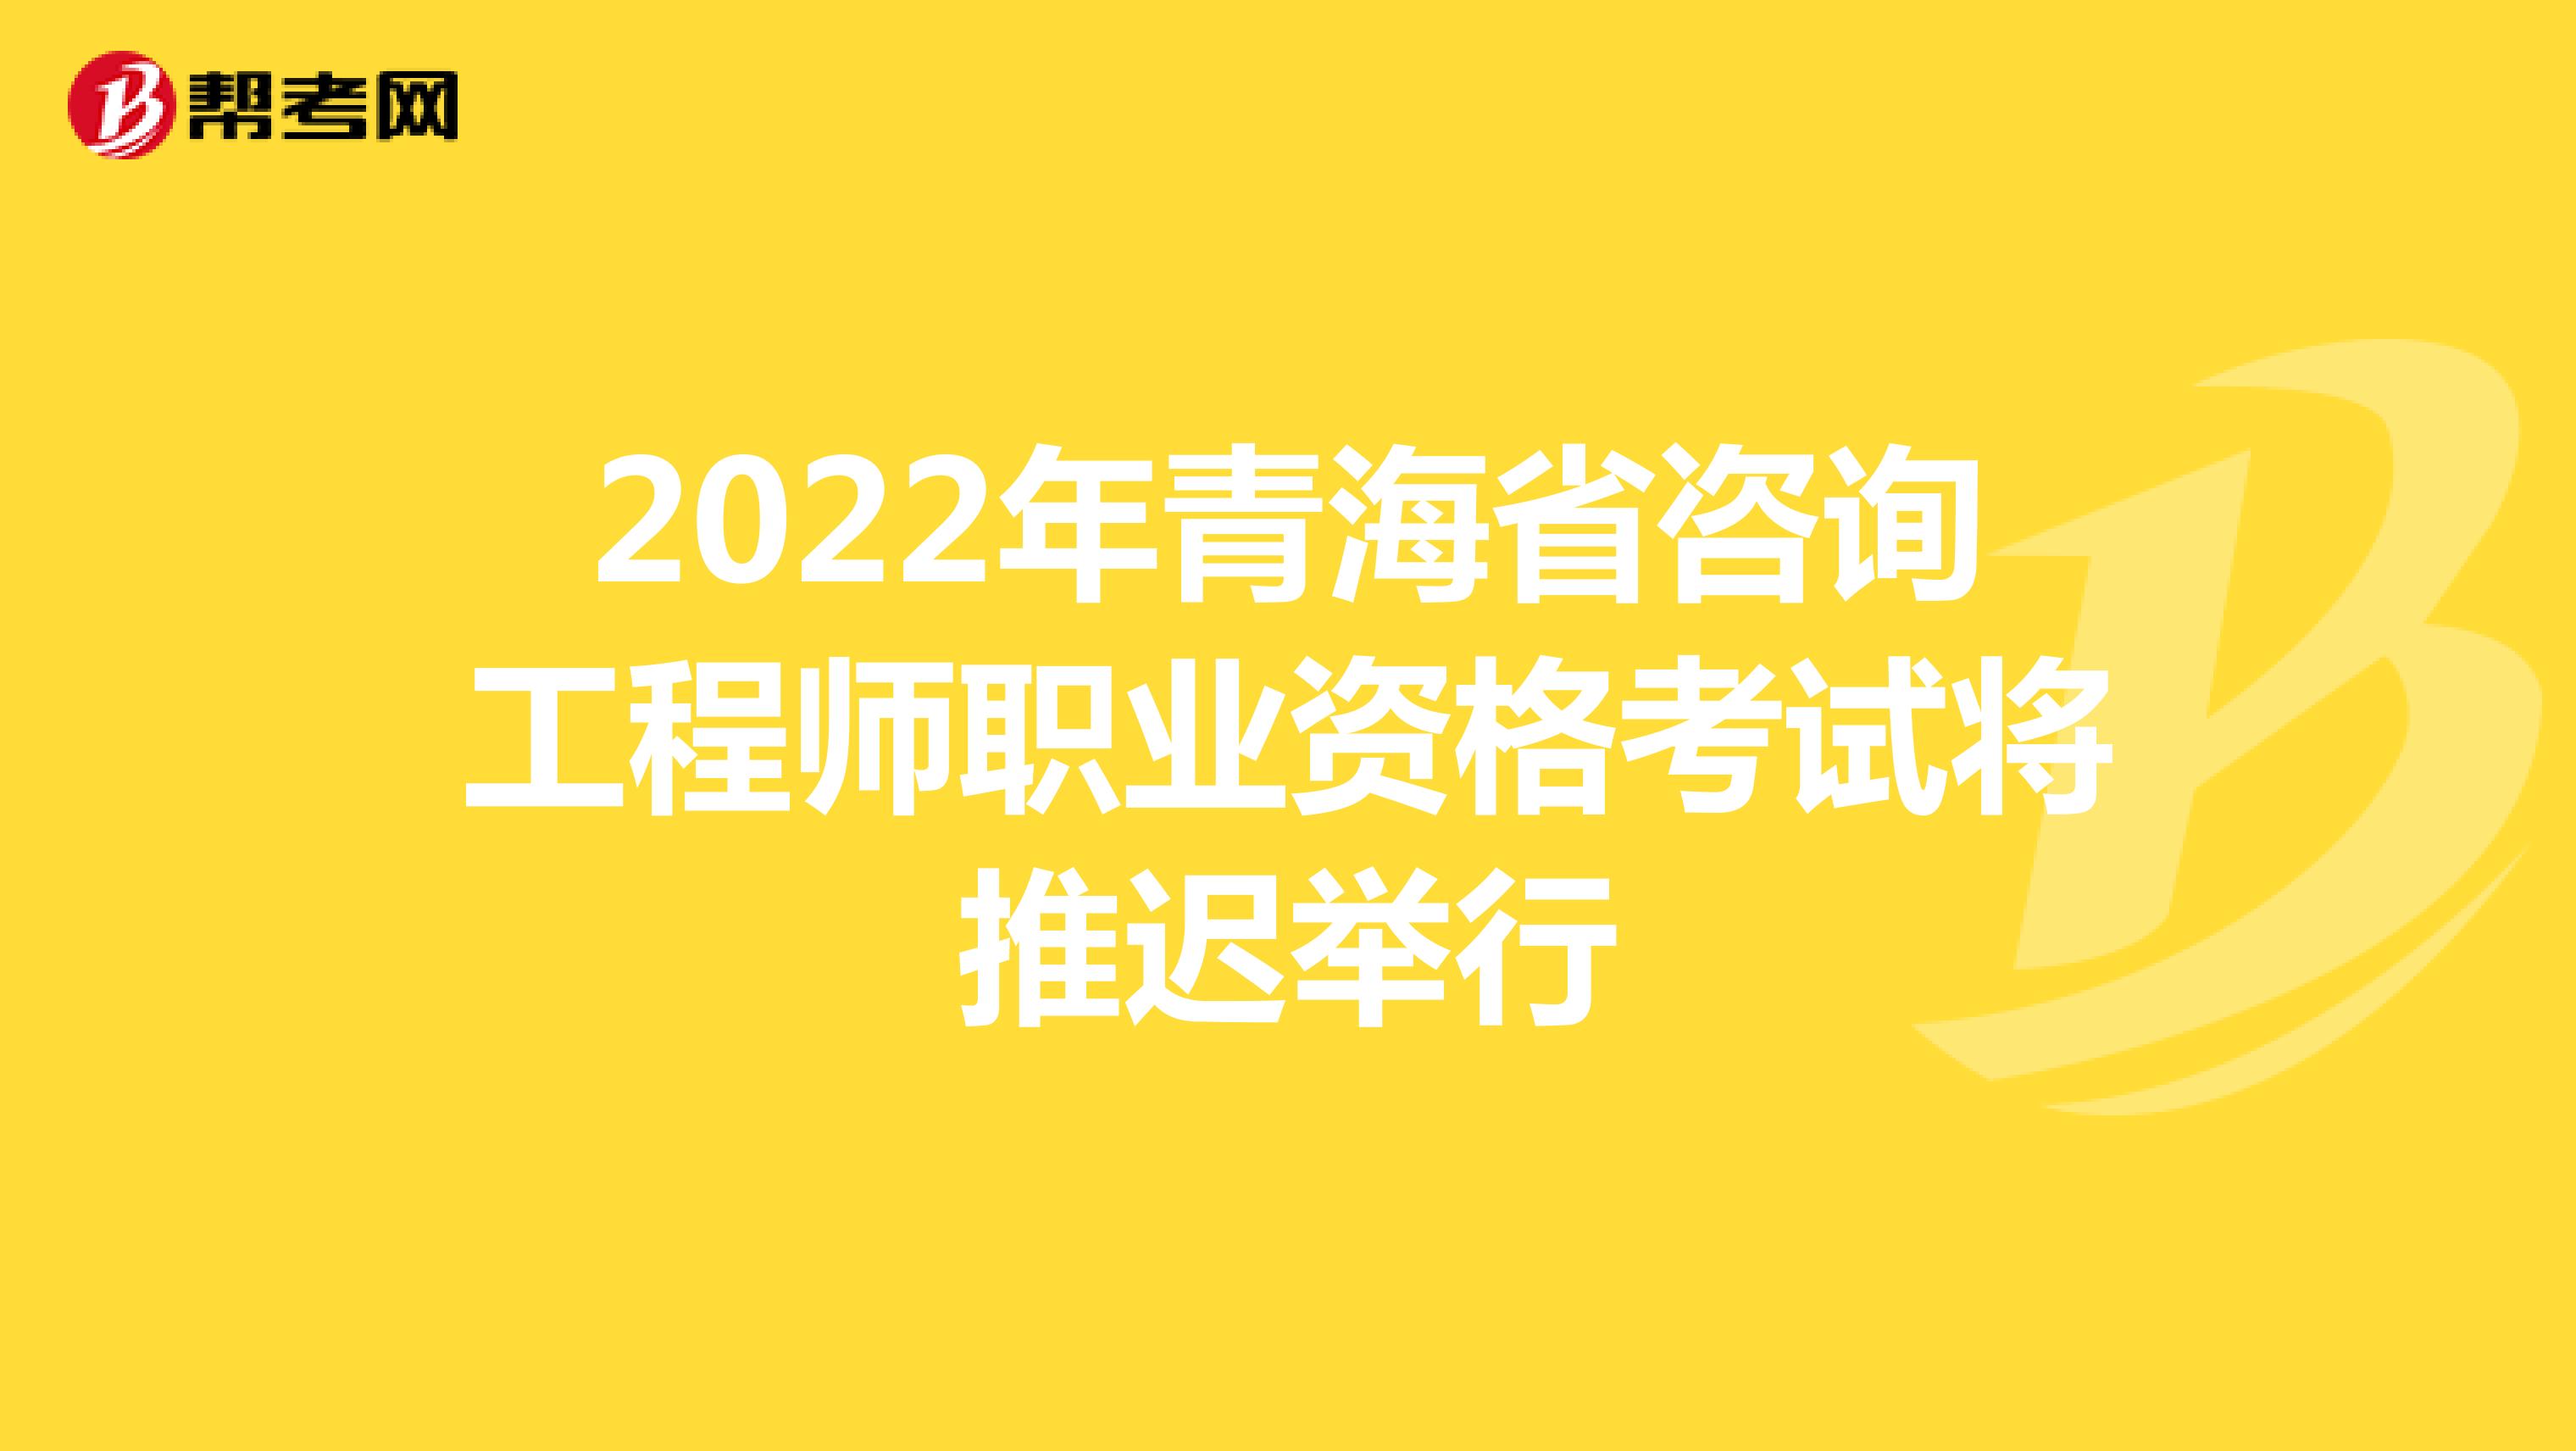 2022年青海省咨询工程师职业资格考试将推迟举行